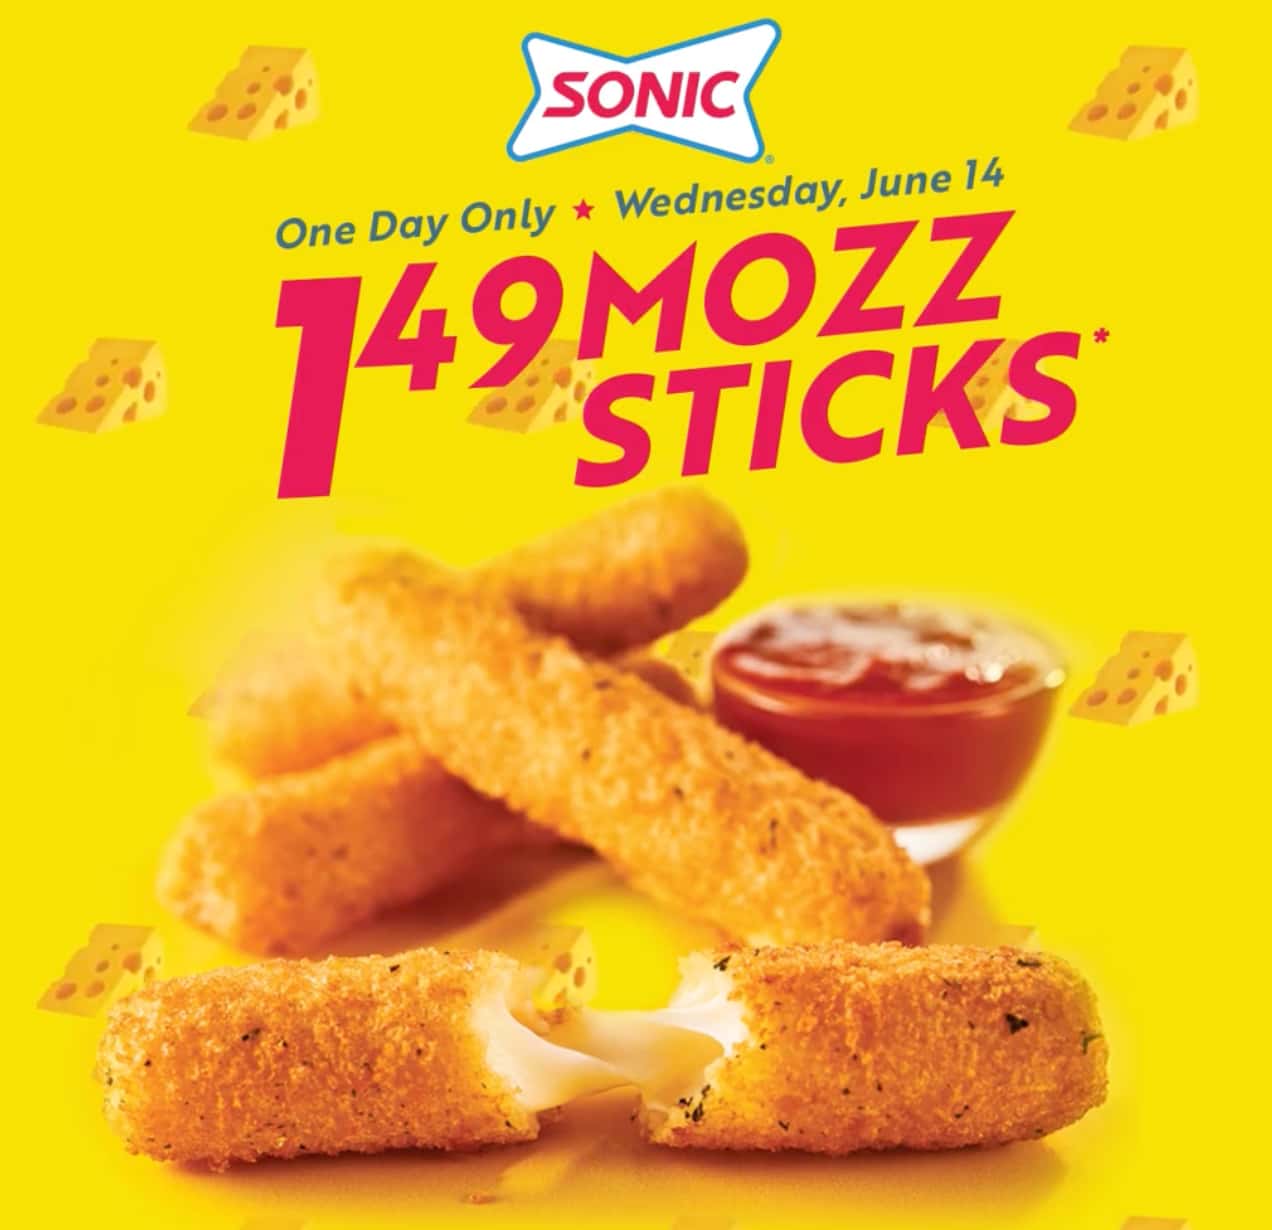 Sonic Mozz sticks day